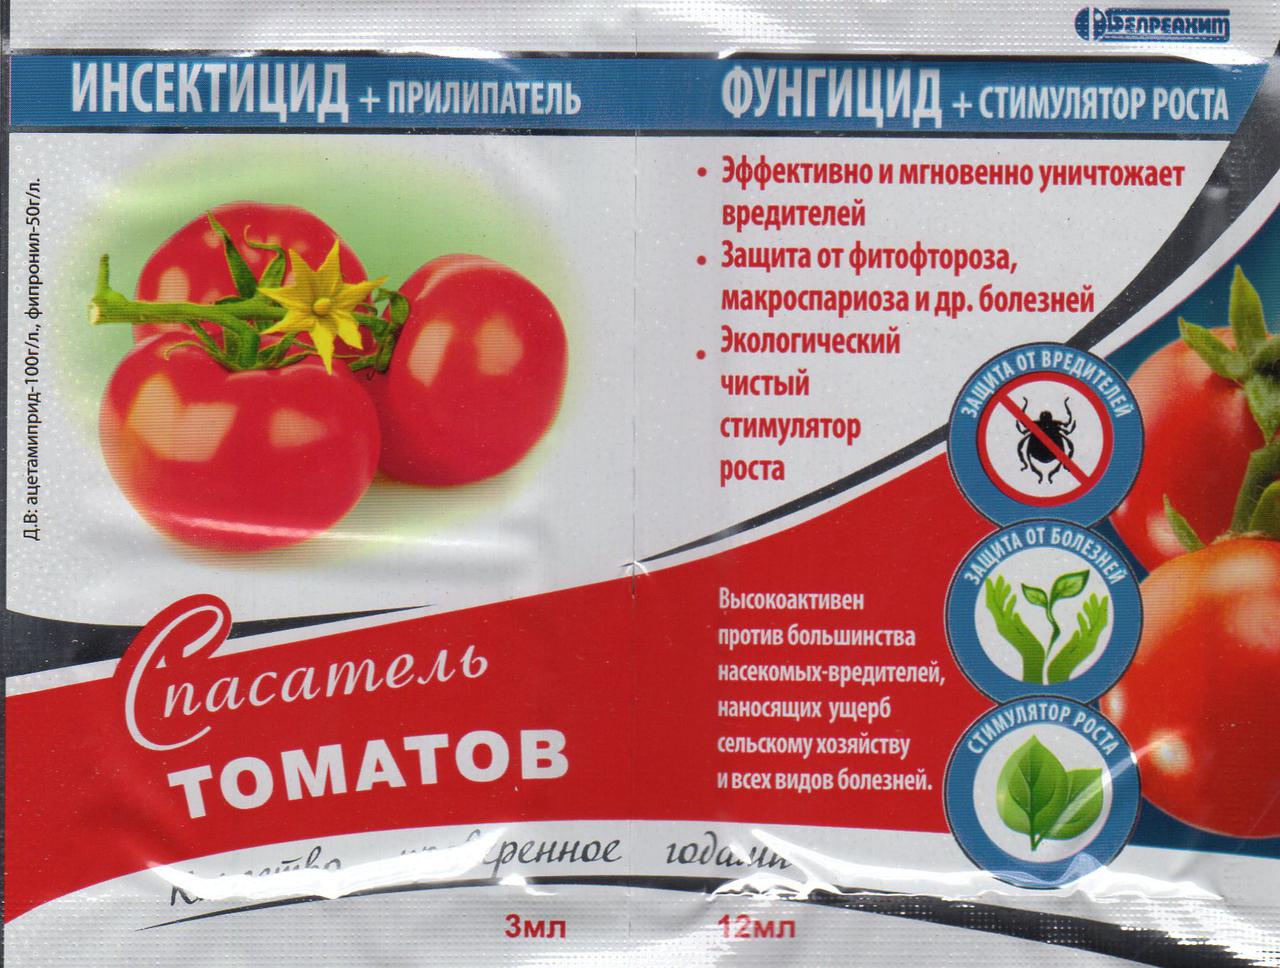 Спасатель томатов уничтожает одновременно и болезнетворные микроорганизмы и насекомых-вредителей. Средняя цена — 35 рублей